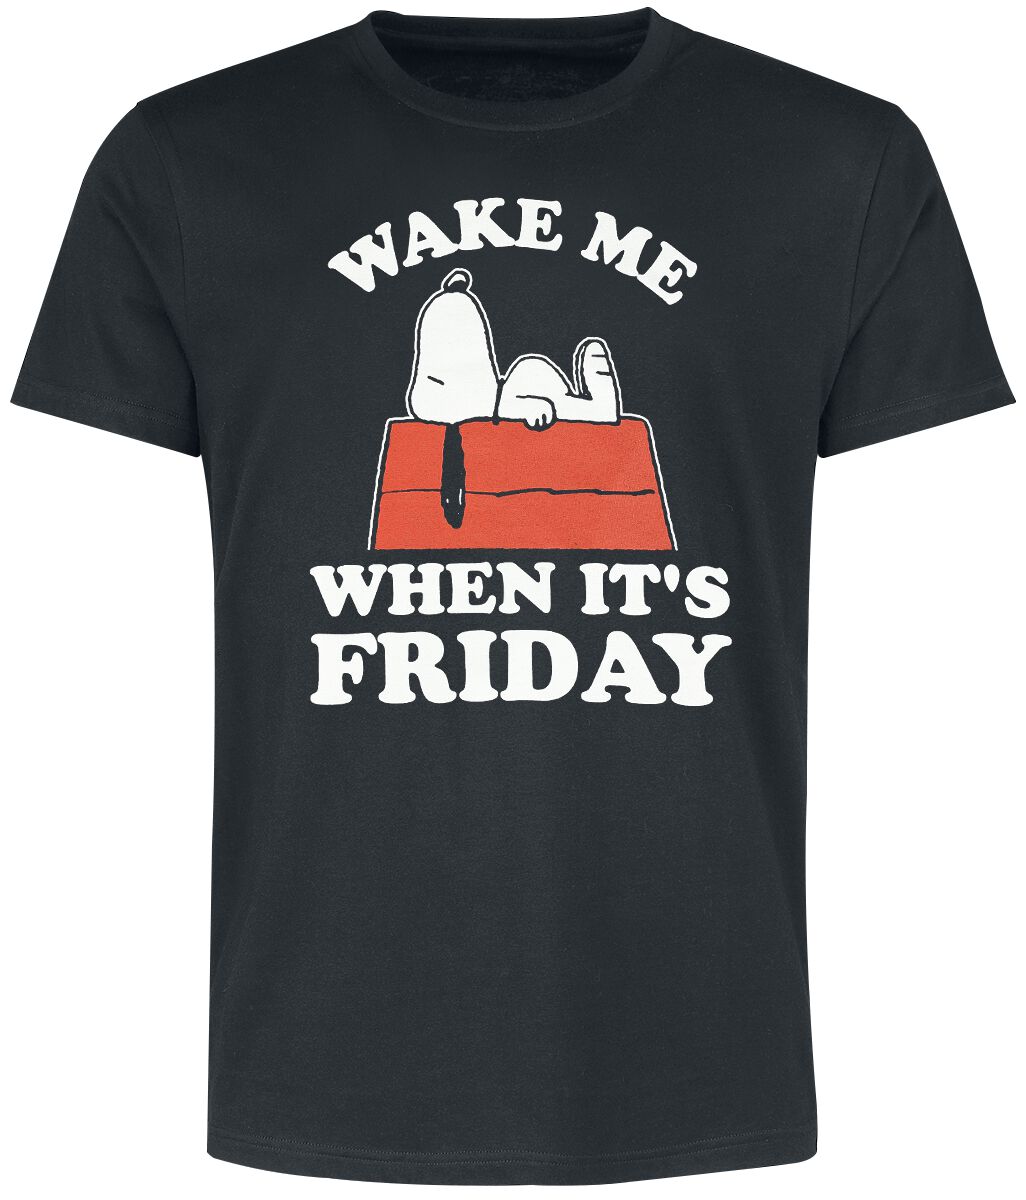 Peanuts T-Shirt - Snoopy - Wake Me When It´s Friday - M bis 3XL - für Männer - Größe M - schwarz  - EMP exklusives Merchandise!